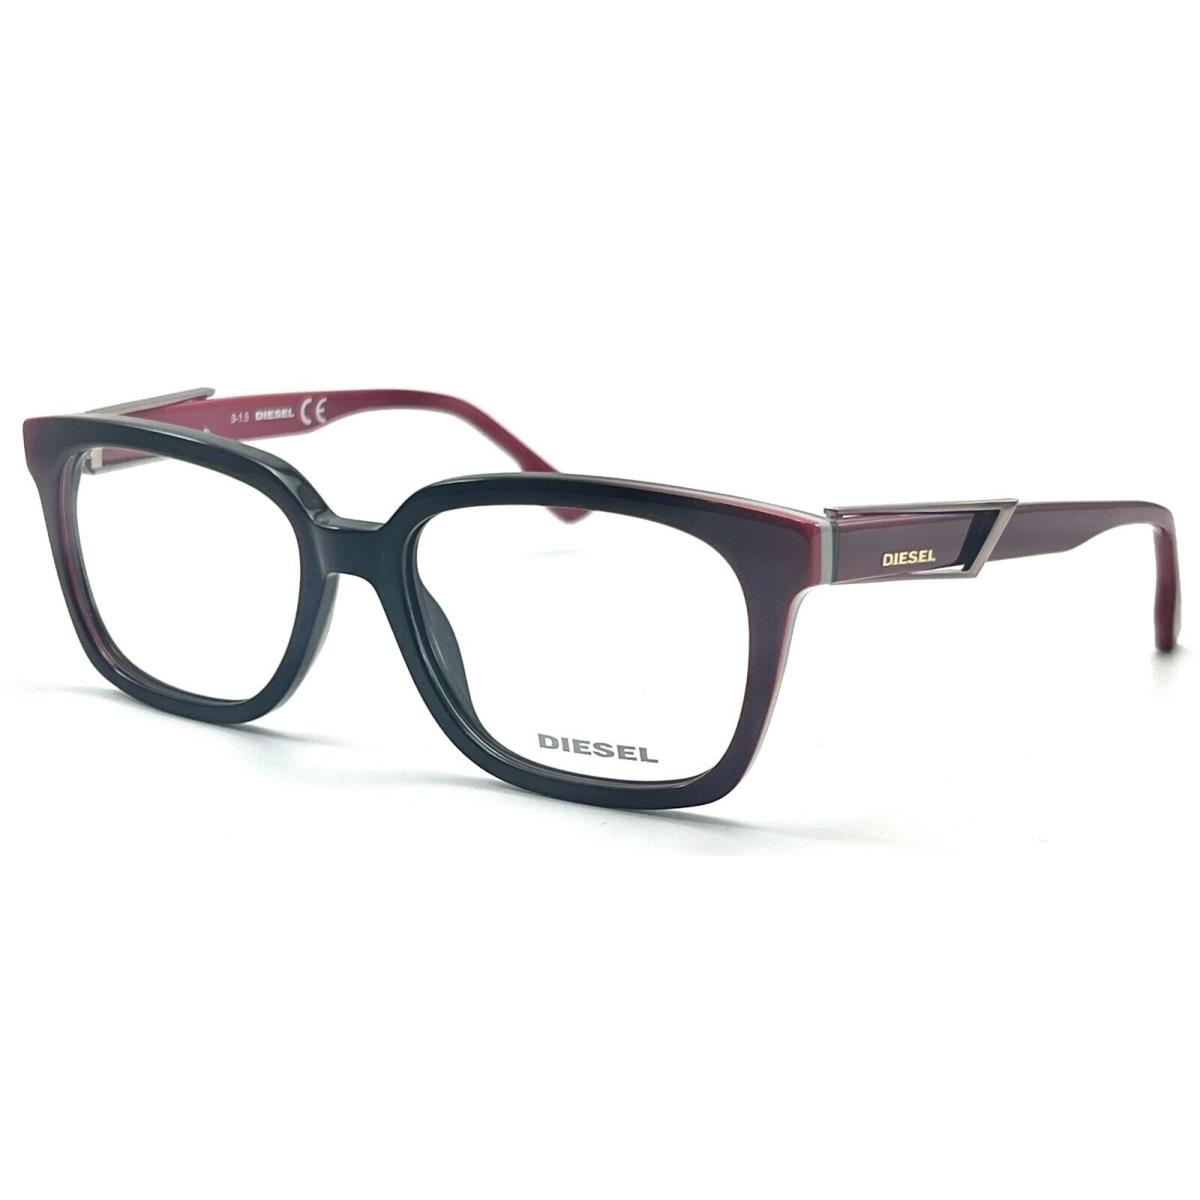 Diesel DL5111 077 Fuchsia Eyeglasses 54-17 145 W/case